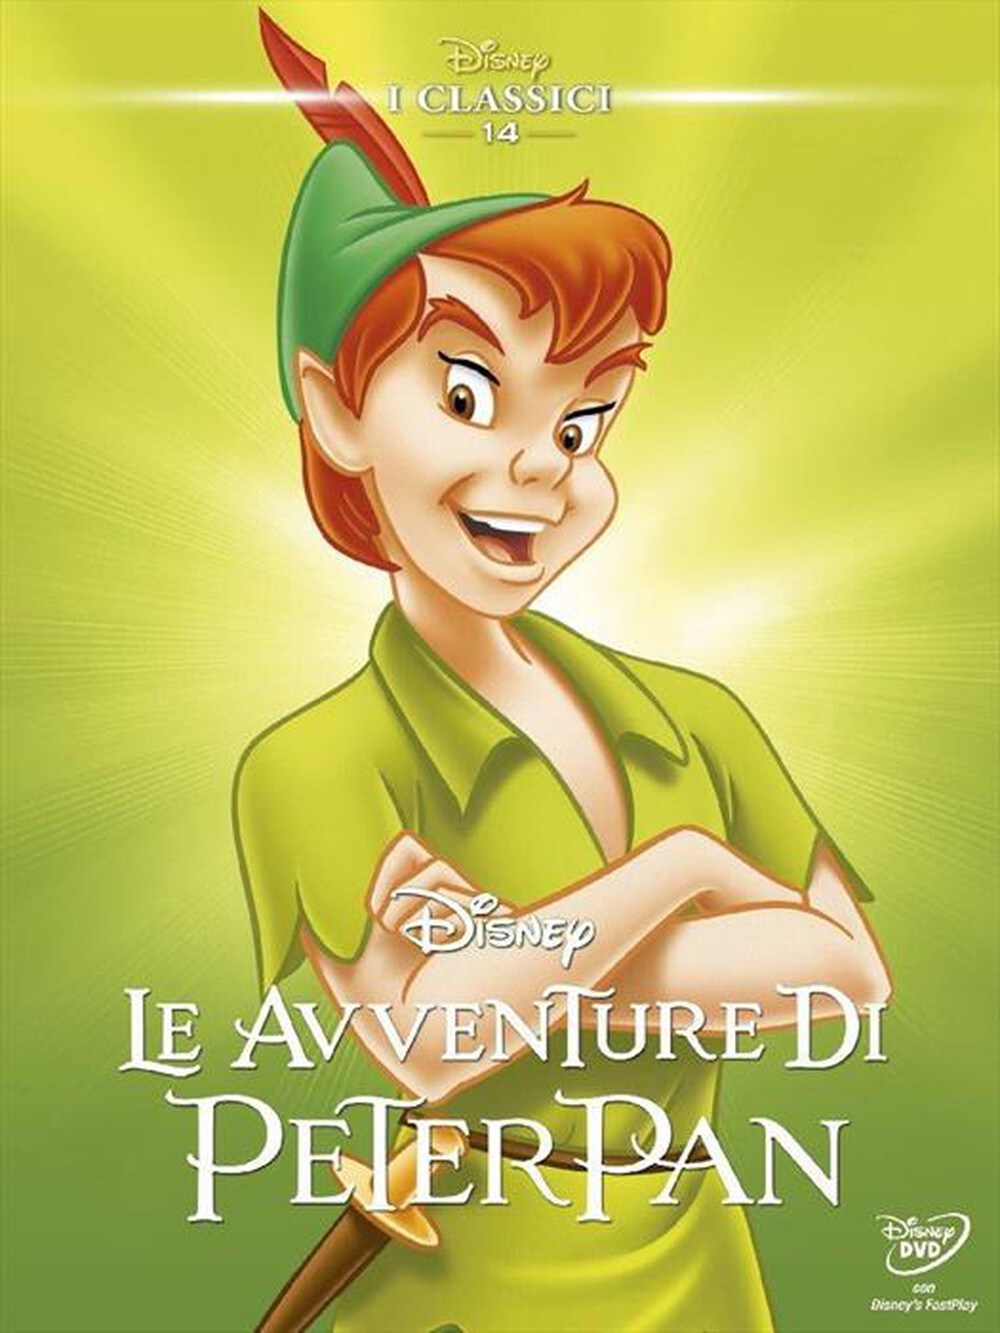 "WALT DISNEY - Avventure Di Peter Pan (Le)"